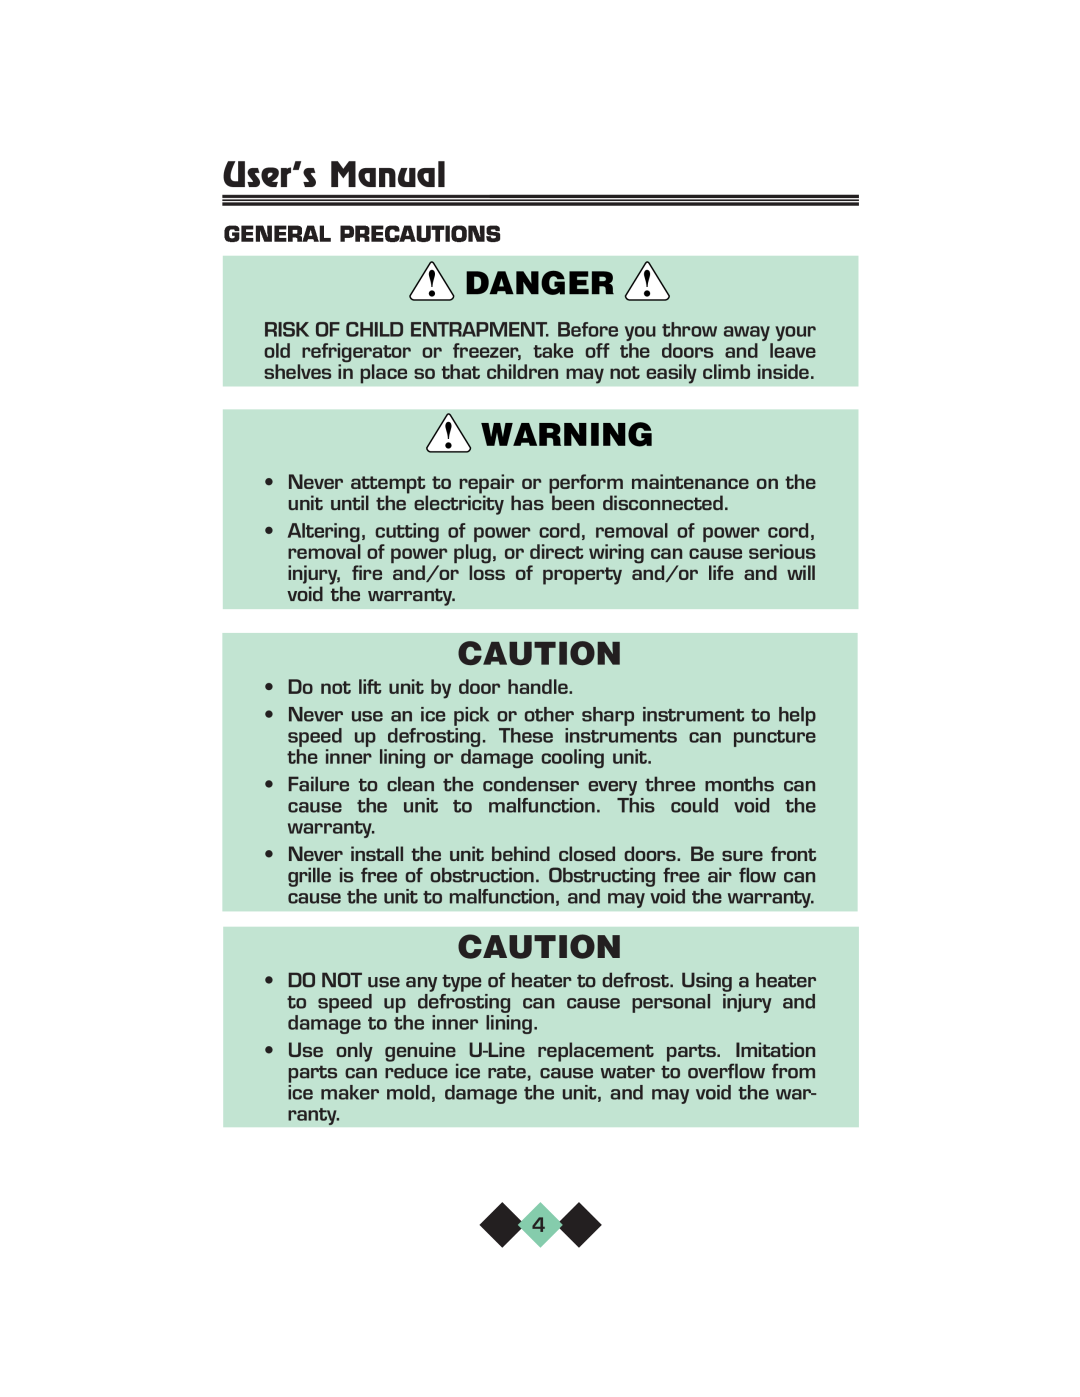 U-Line pmn manual General Precautions, User’s Manual, Danger 